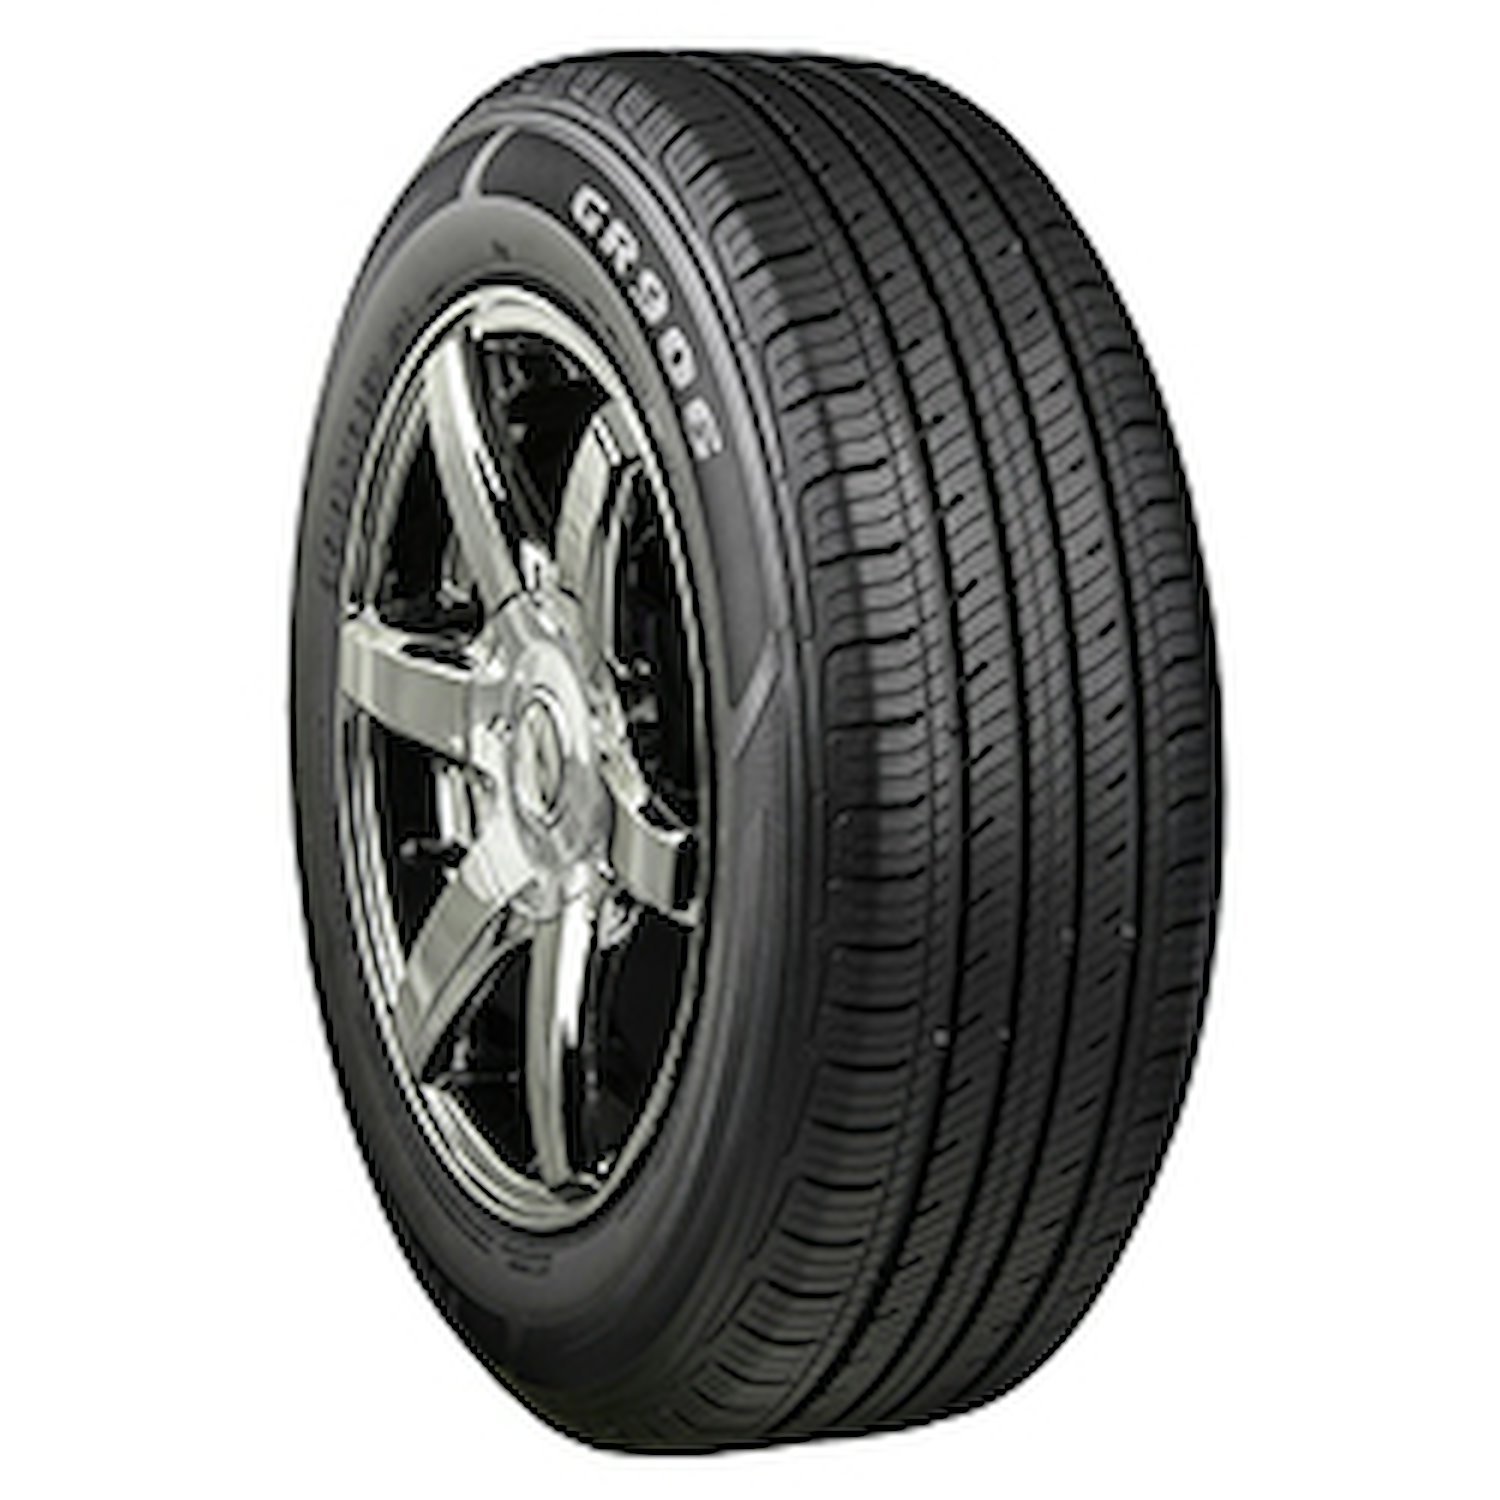 GR906 Tire, 235/60R16 100H